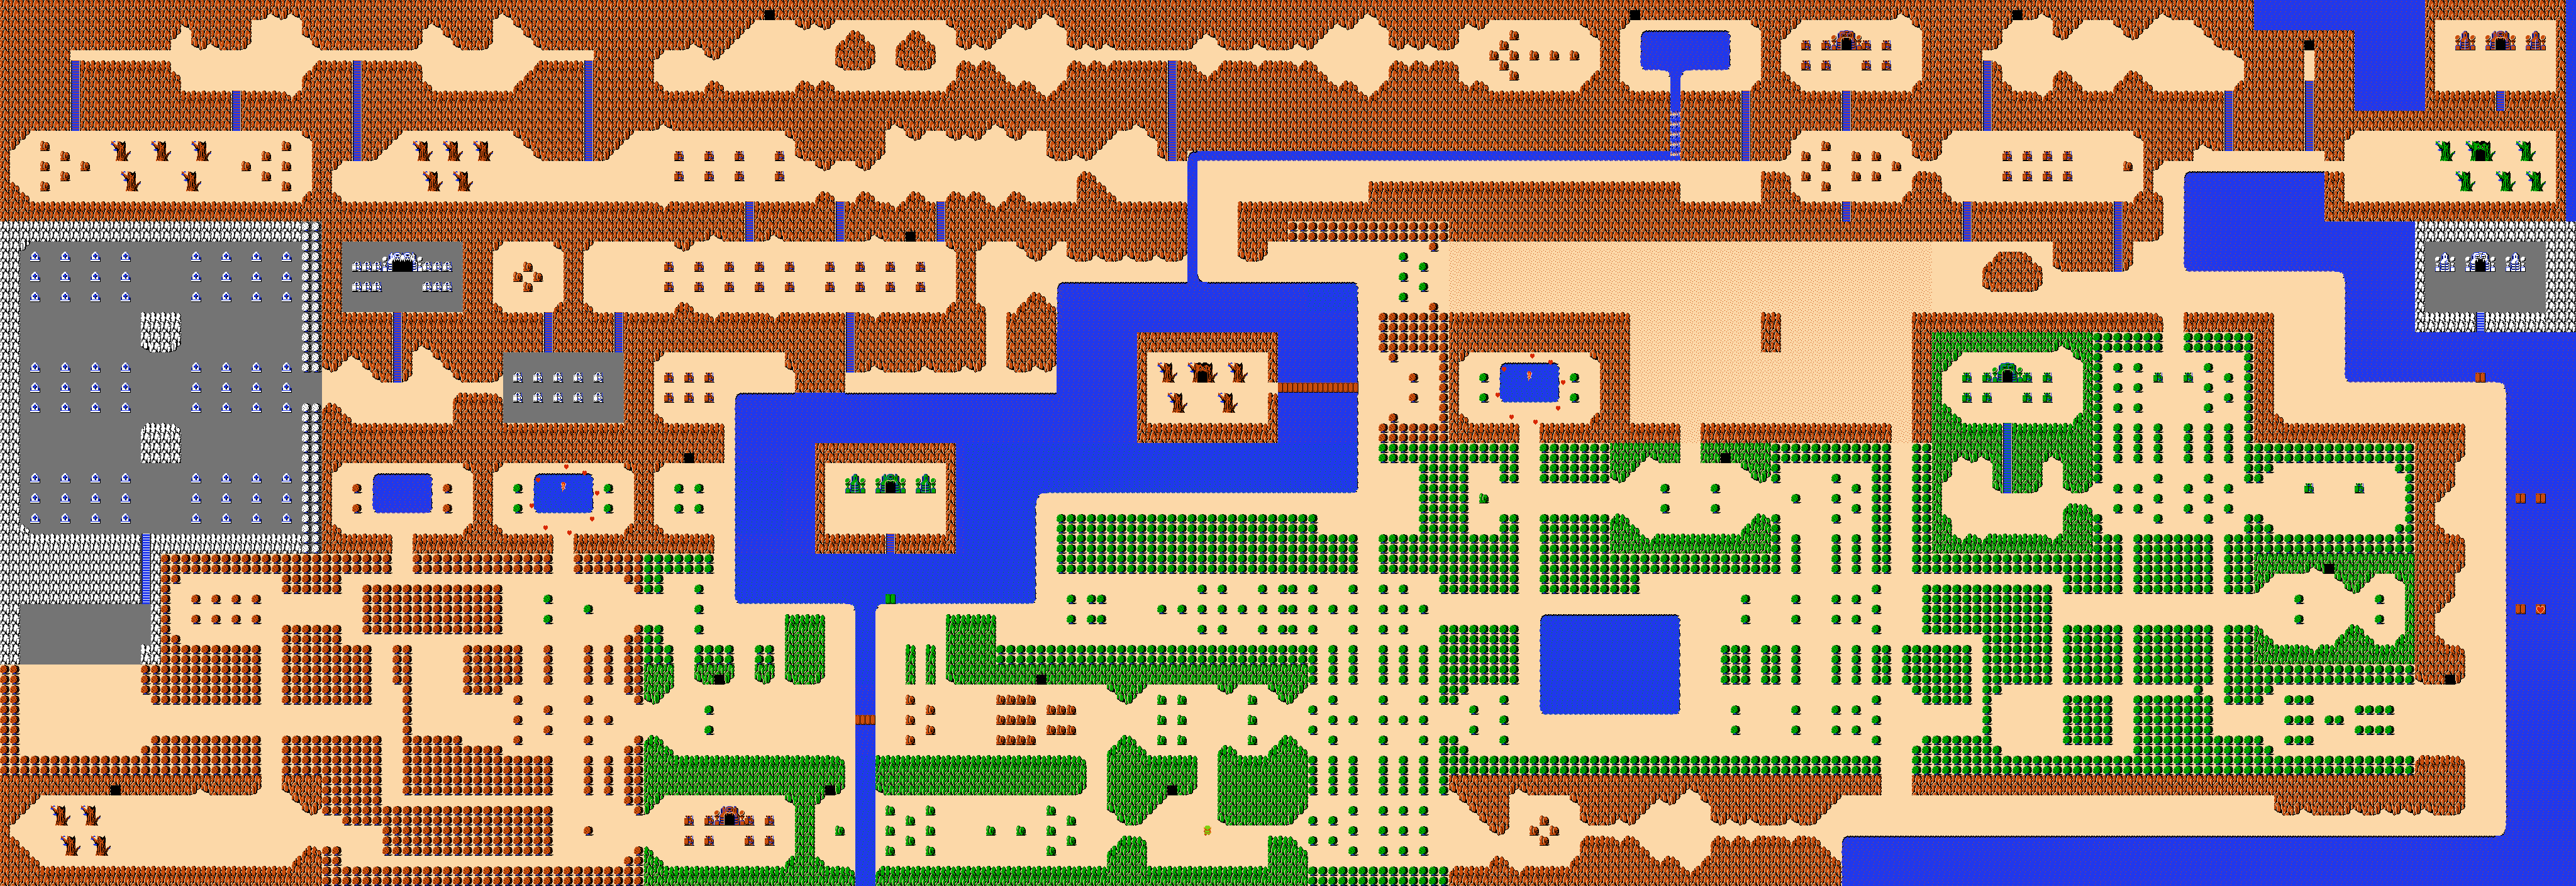 Legend Of Zelda Maps Ian Albert Com